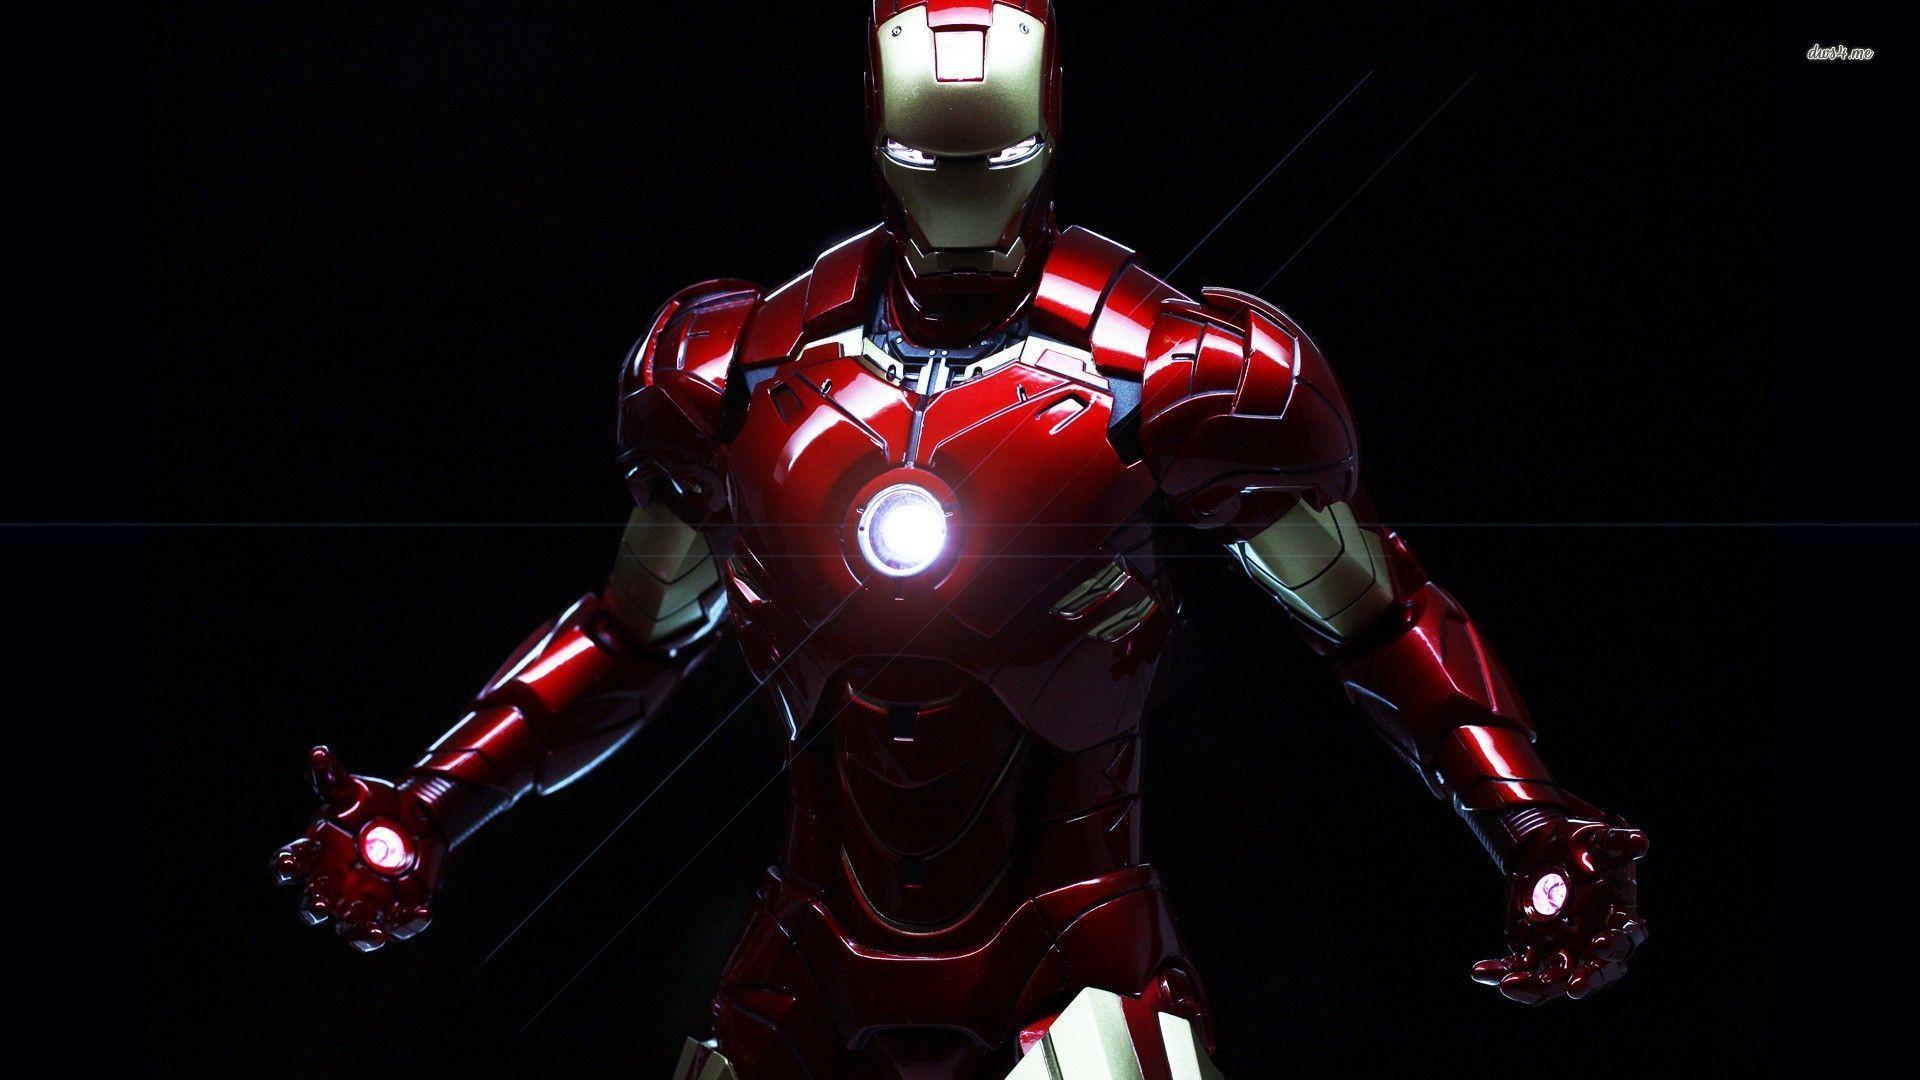 Truyền tải phong cách mạnh mẽ, năng động của Iron Man, những bức ảnh hình nền cho desktop HD này sẽ thể hiện tốt nhất động lực và khát khao chinh phục thành công của bạn. Hãy cập nhật ngay hình nền Iron Man Desktop HD để \